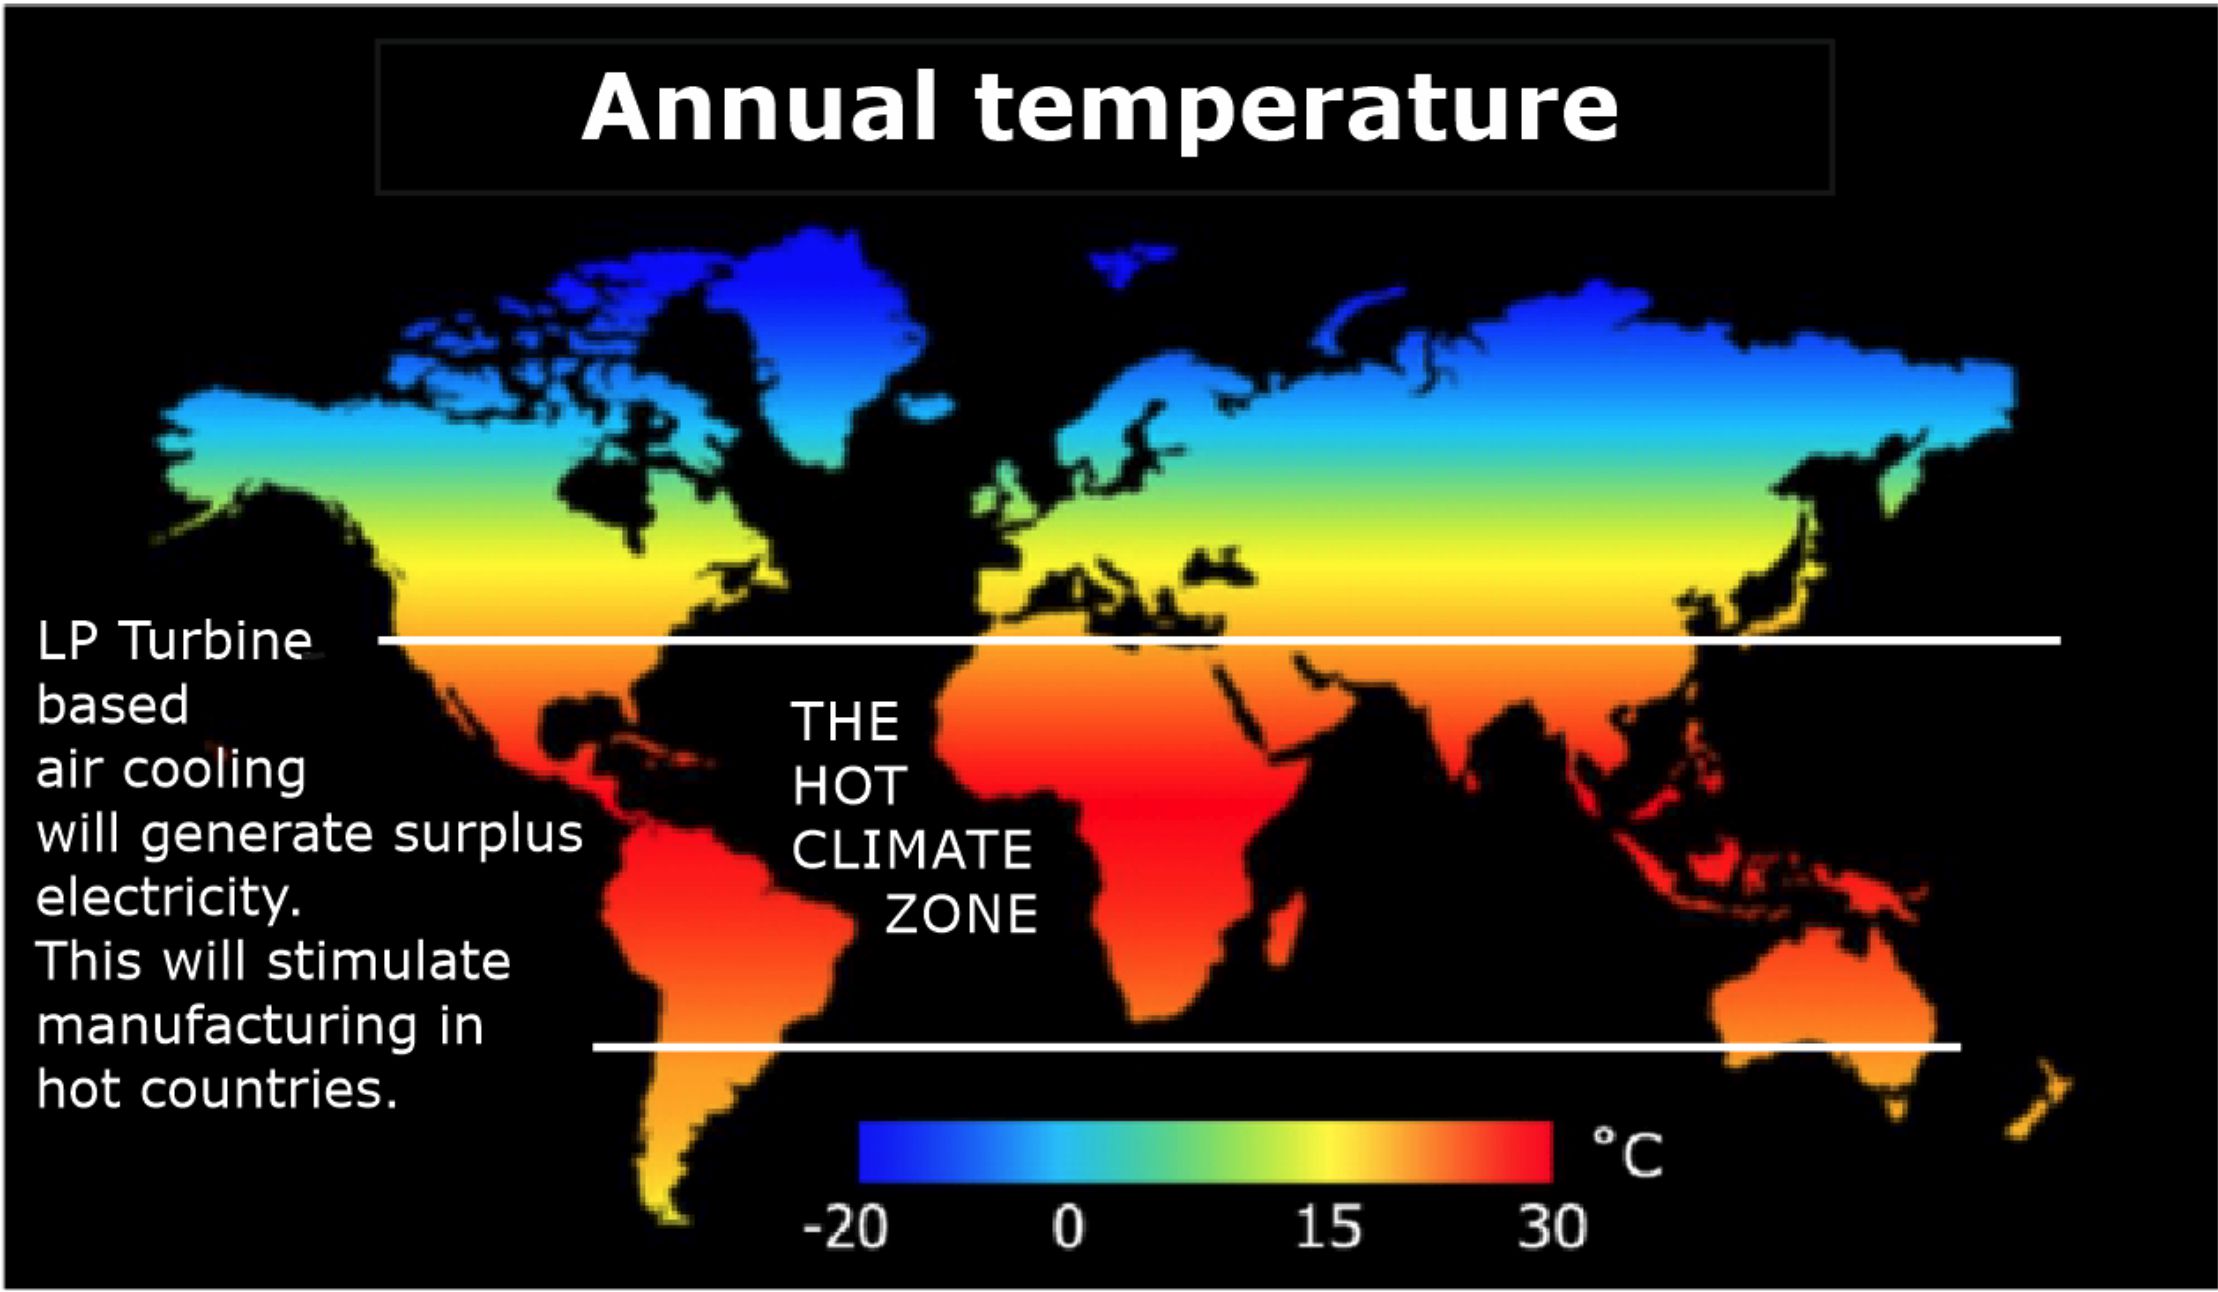 World annual temperatures